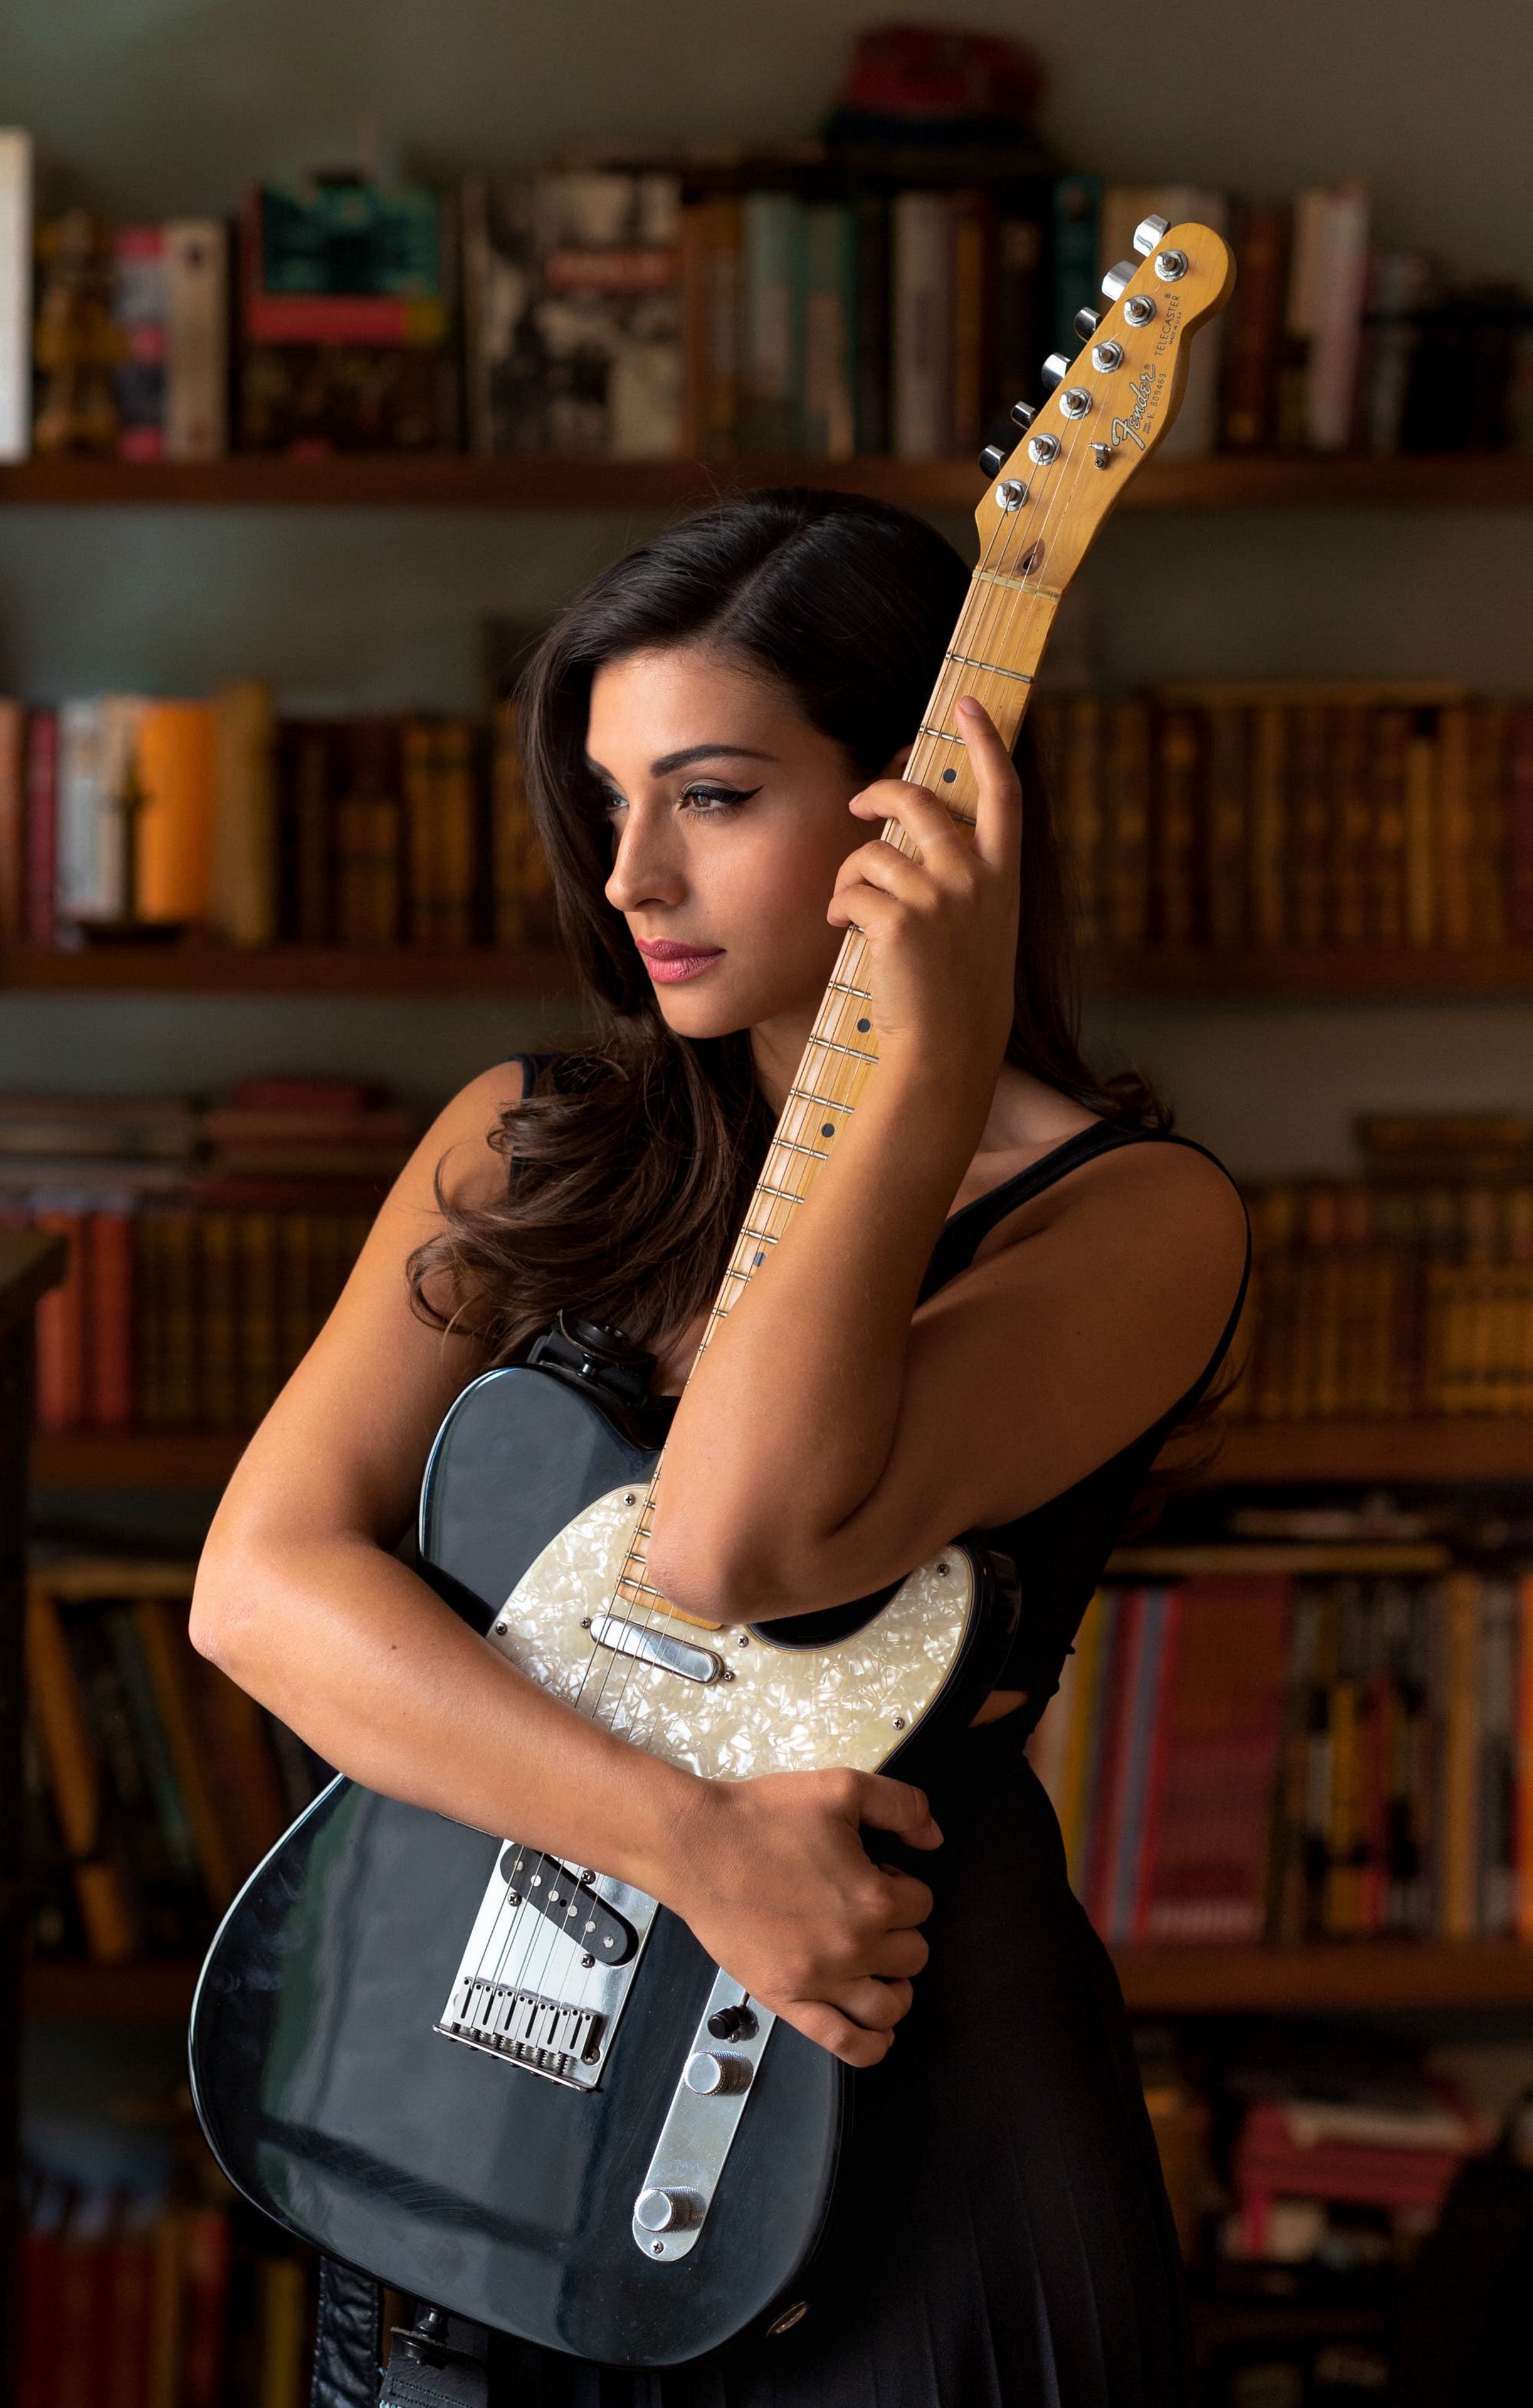 Bilder von Model Gitarre Tess Perrone Mädchens Hand  für Handy junge frau junge Frauen